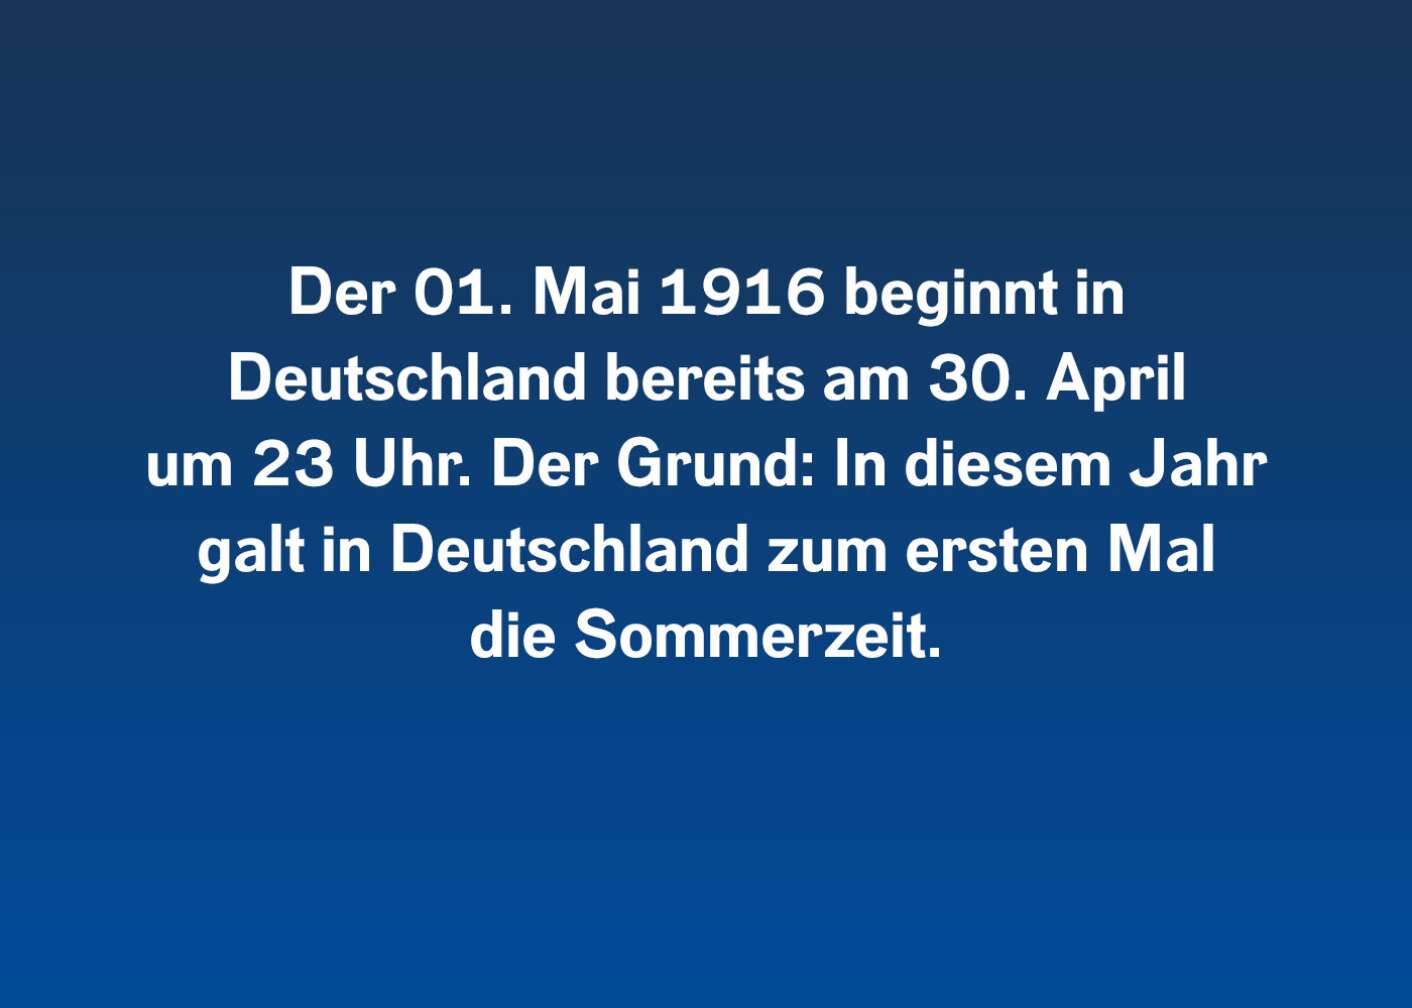 Der 01. Mai 1916 beginnt in Deutschland bereits am 30. April um 23 Uhr. Der Grund: In diesem Jahr galt in Deutschland zum ersten Mal die Sommerzeit.